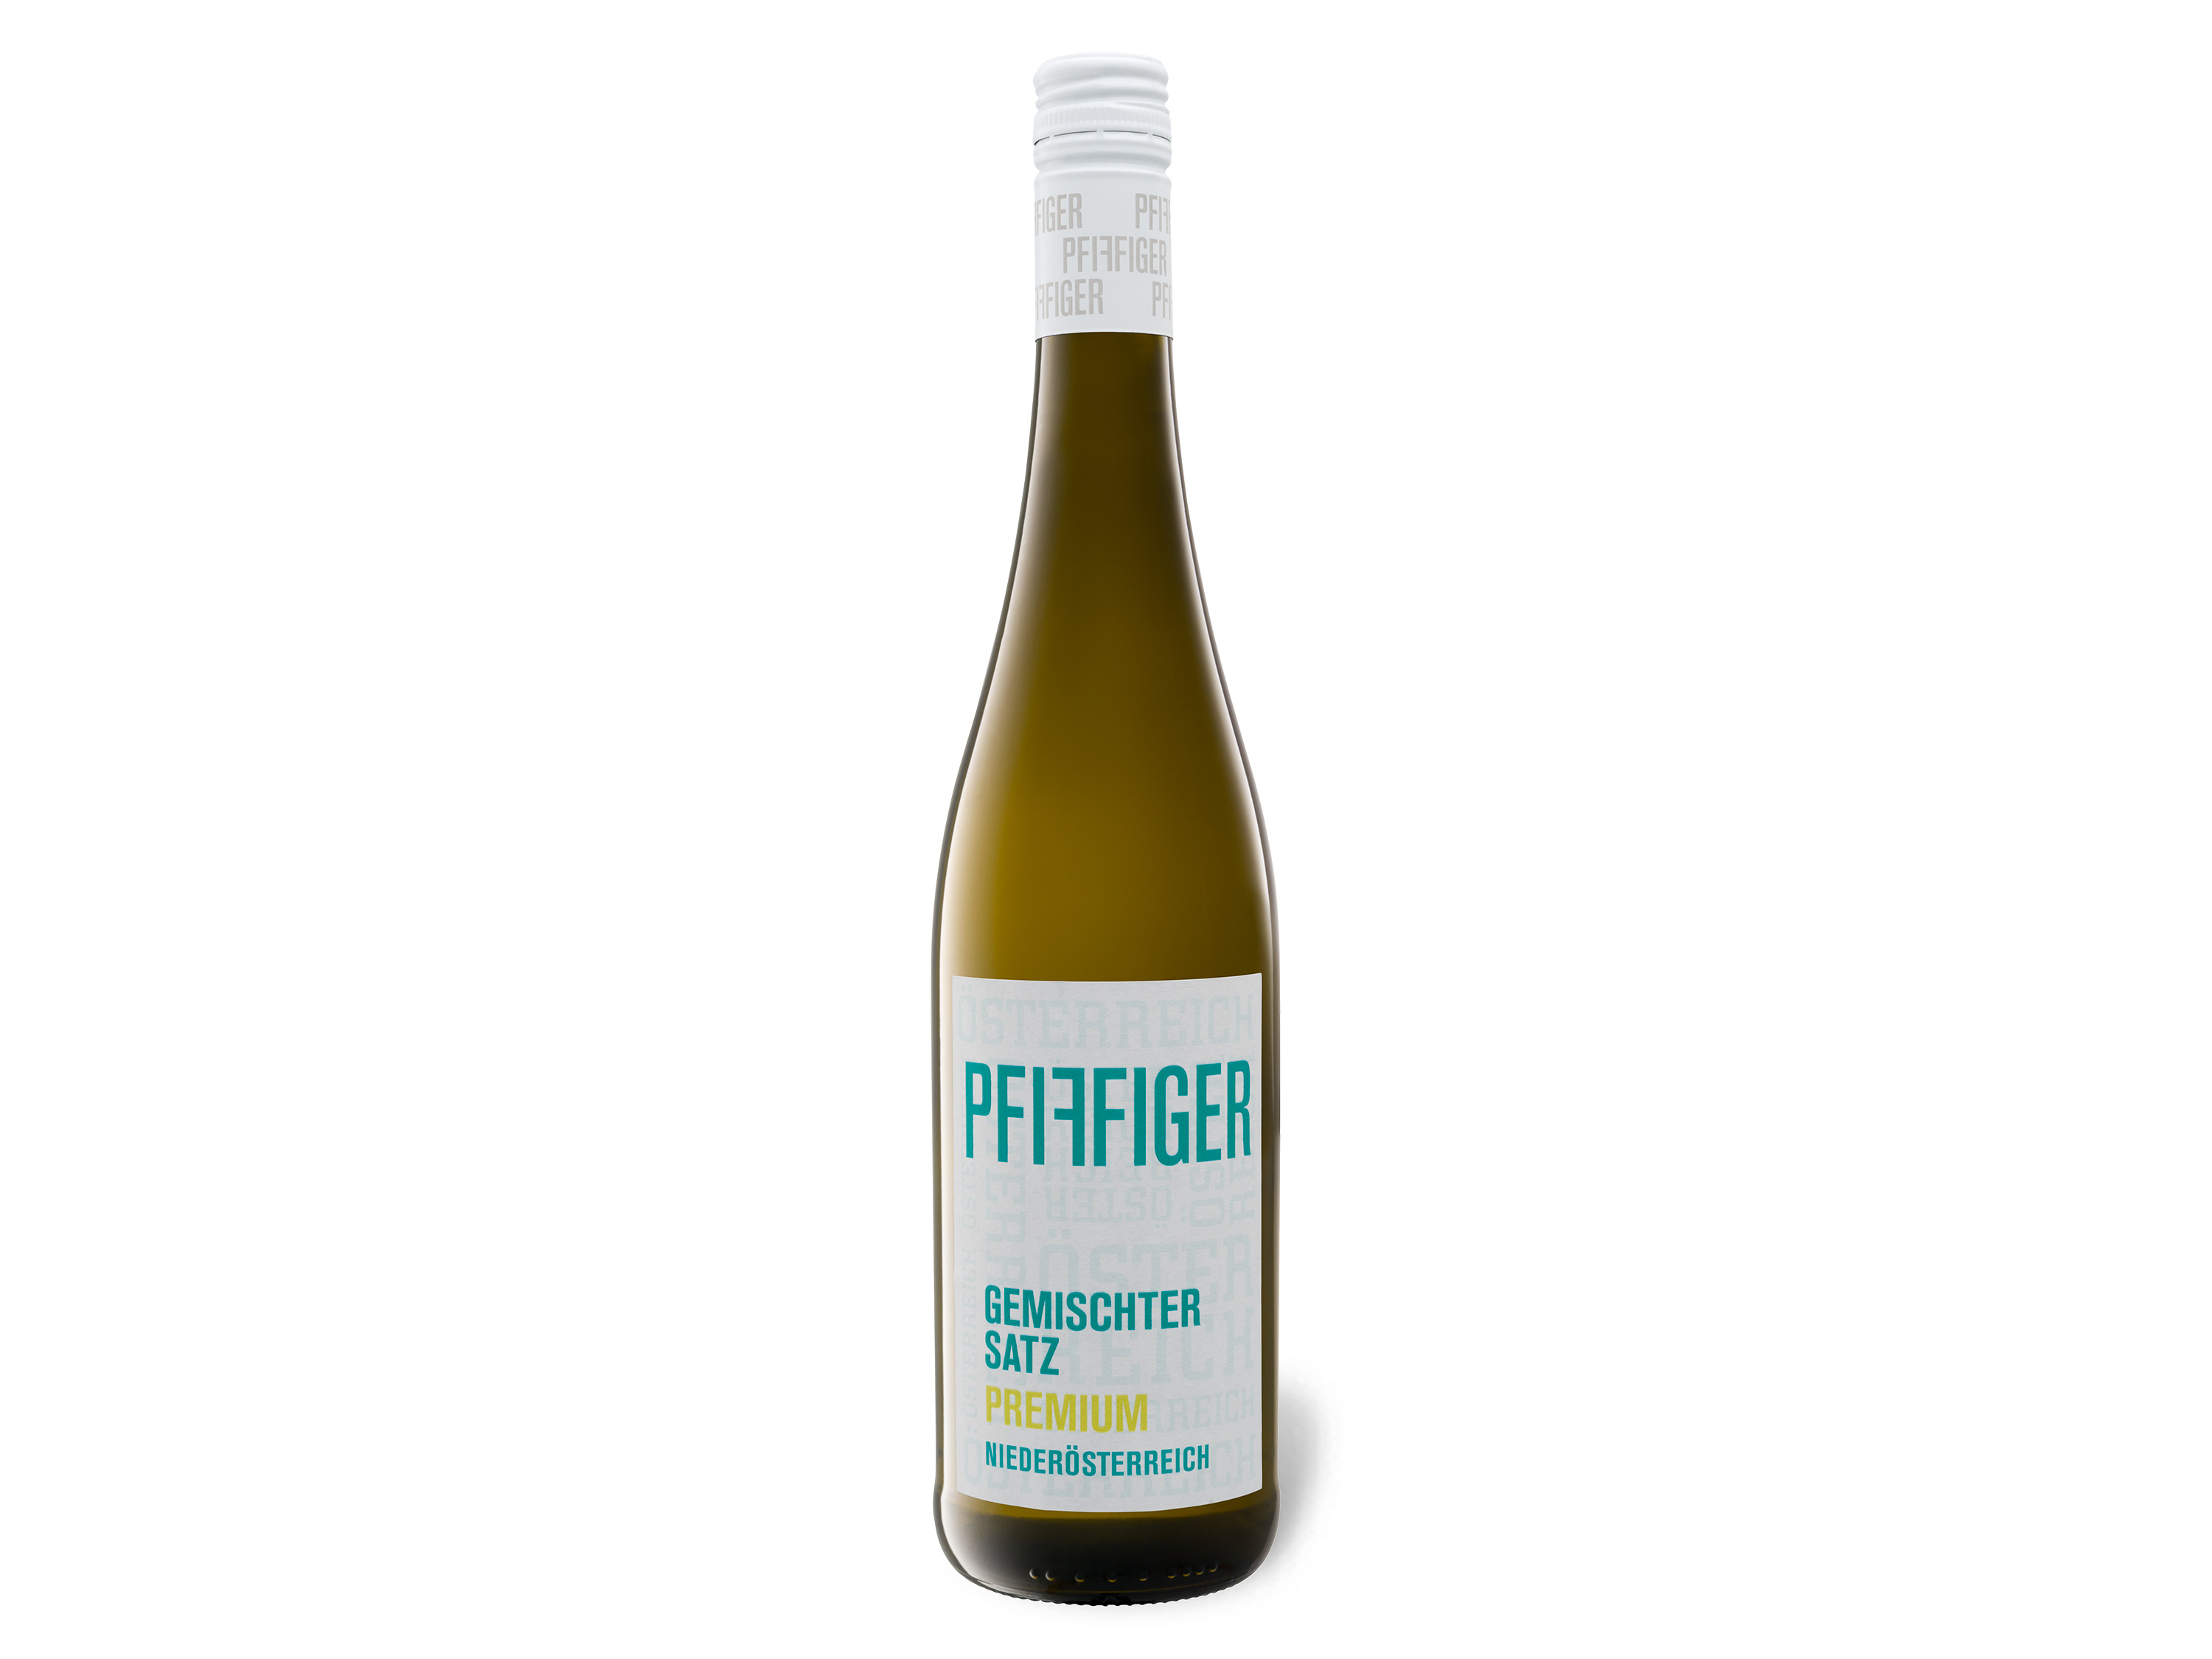 Pfiffiger Gemischter Satz Premium Niederösterreich trocken, Weißwein 2022 Wein & Spirituosen Lidl DE